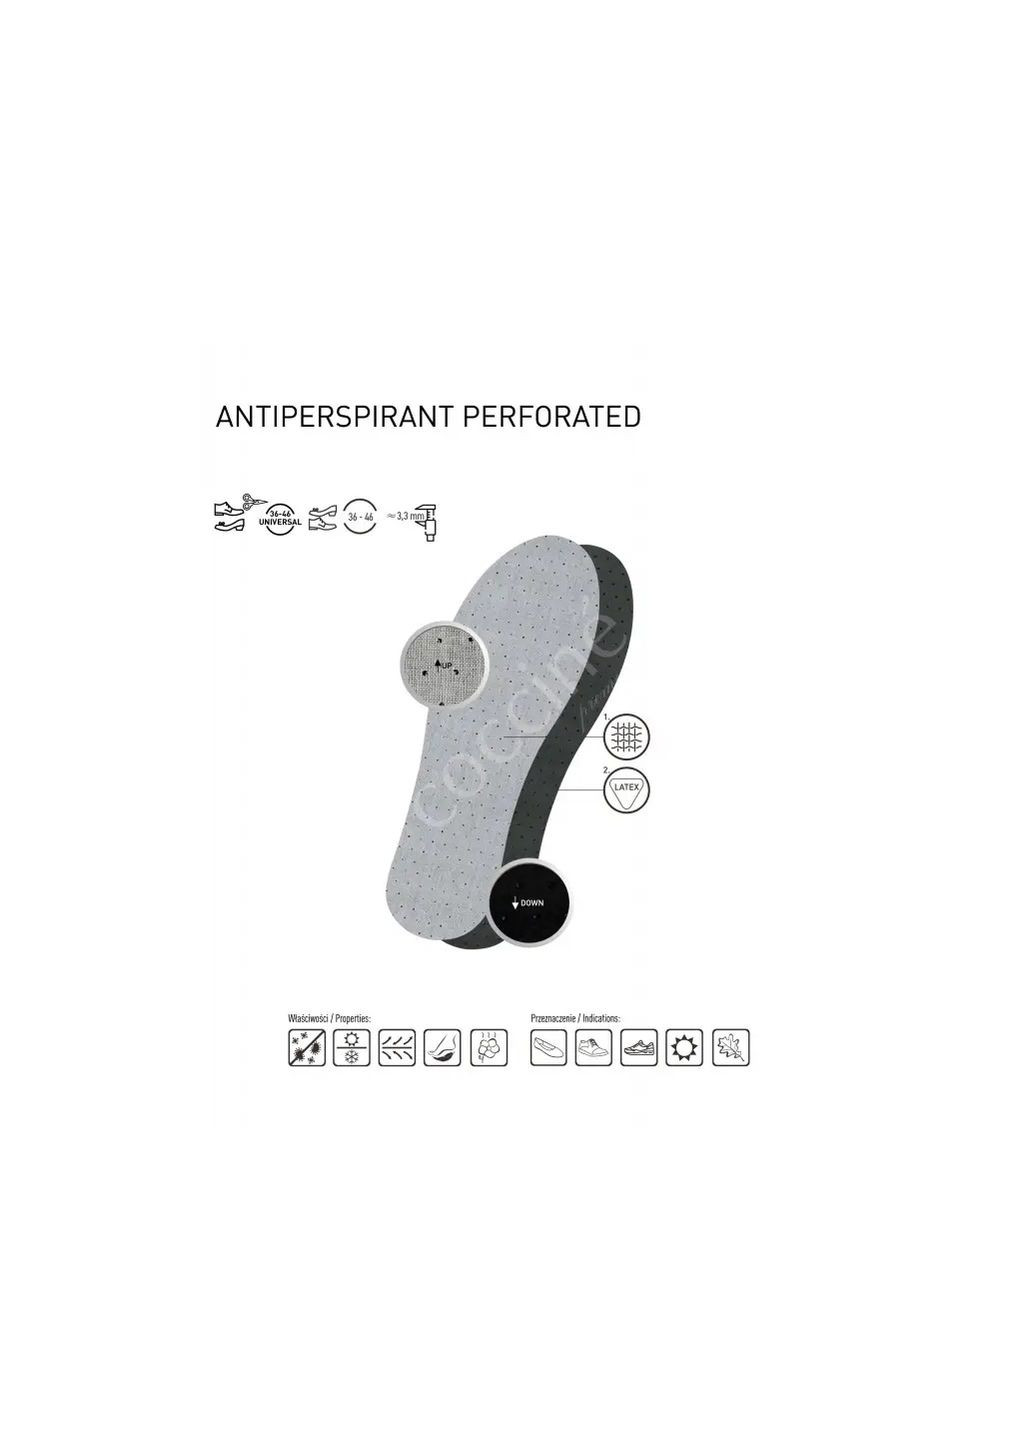 Стельки антибактериальные вырезные Coccine antiperspirant perforated (283250478)